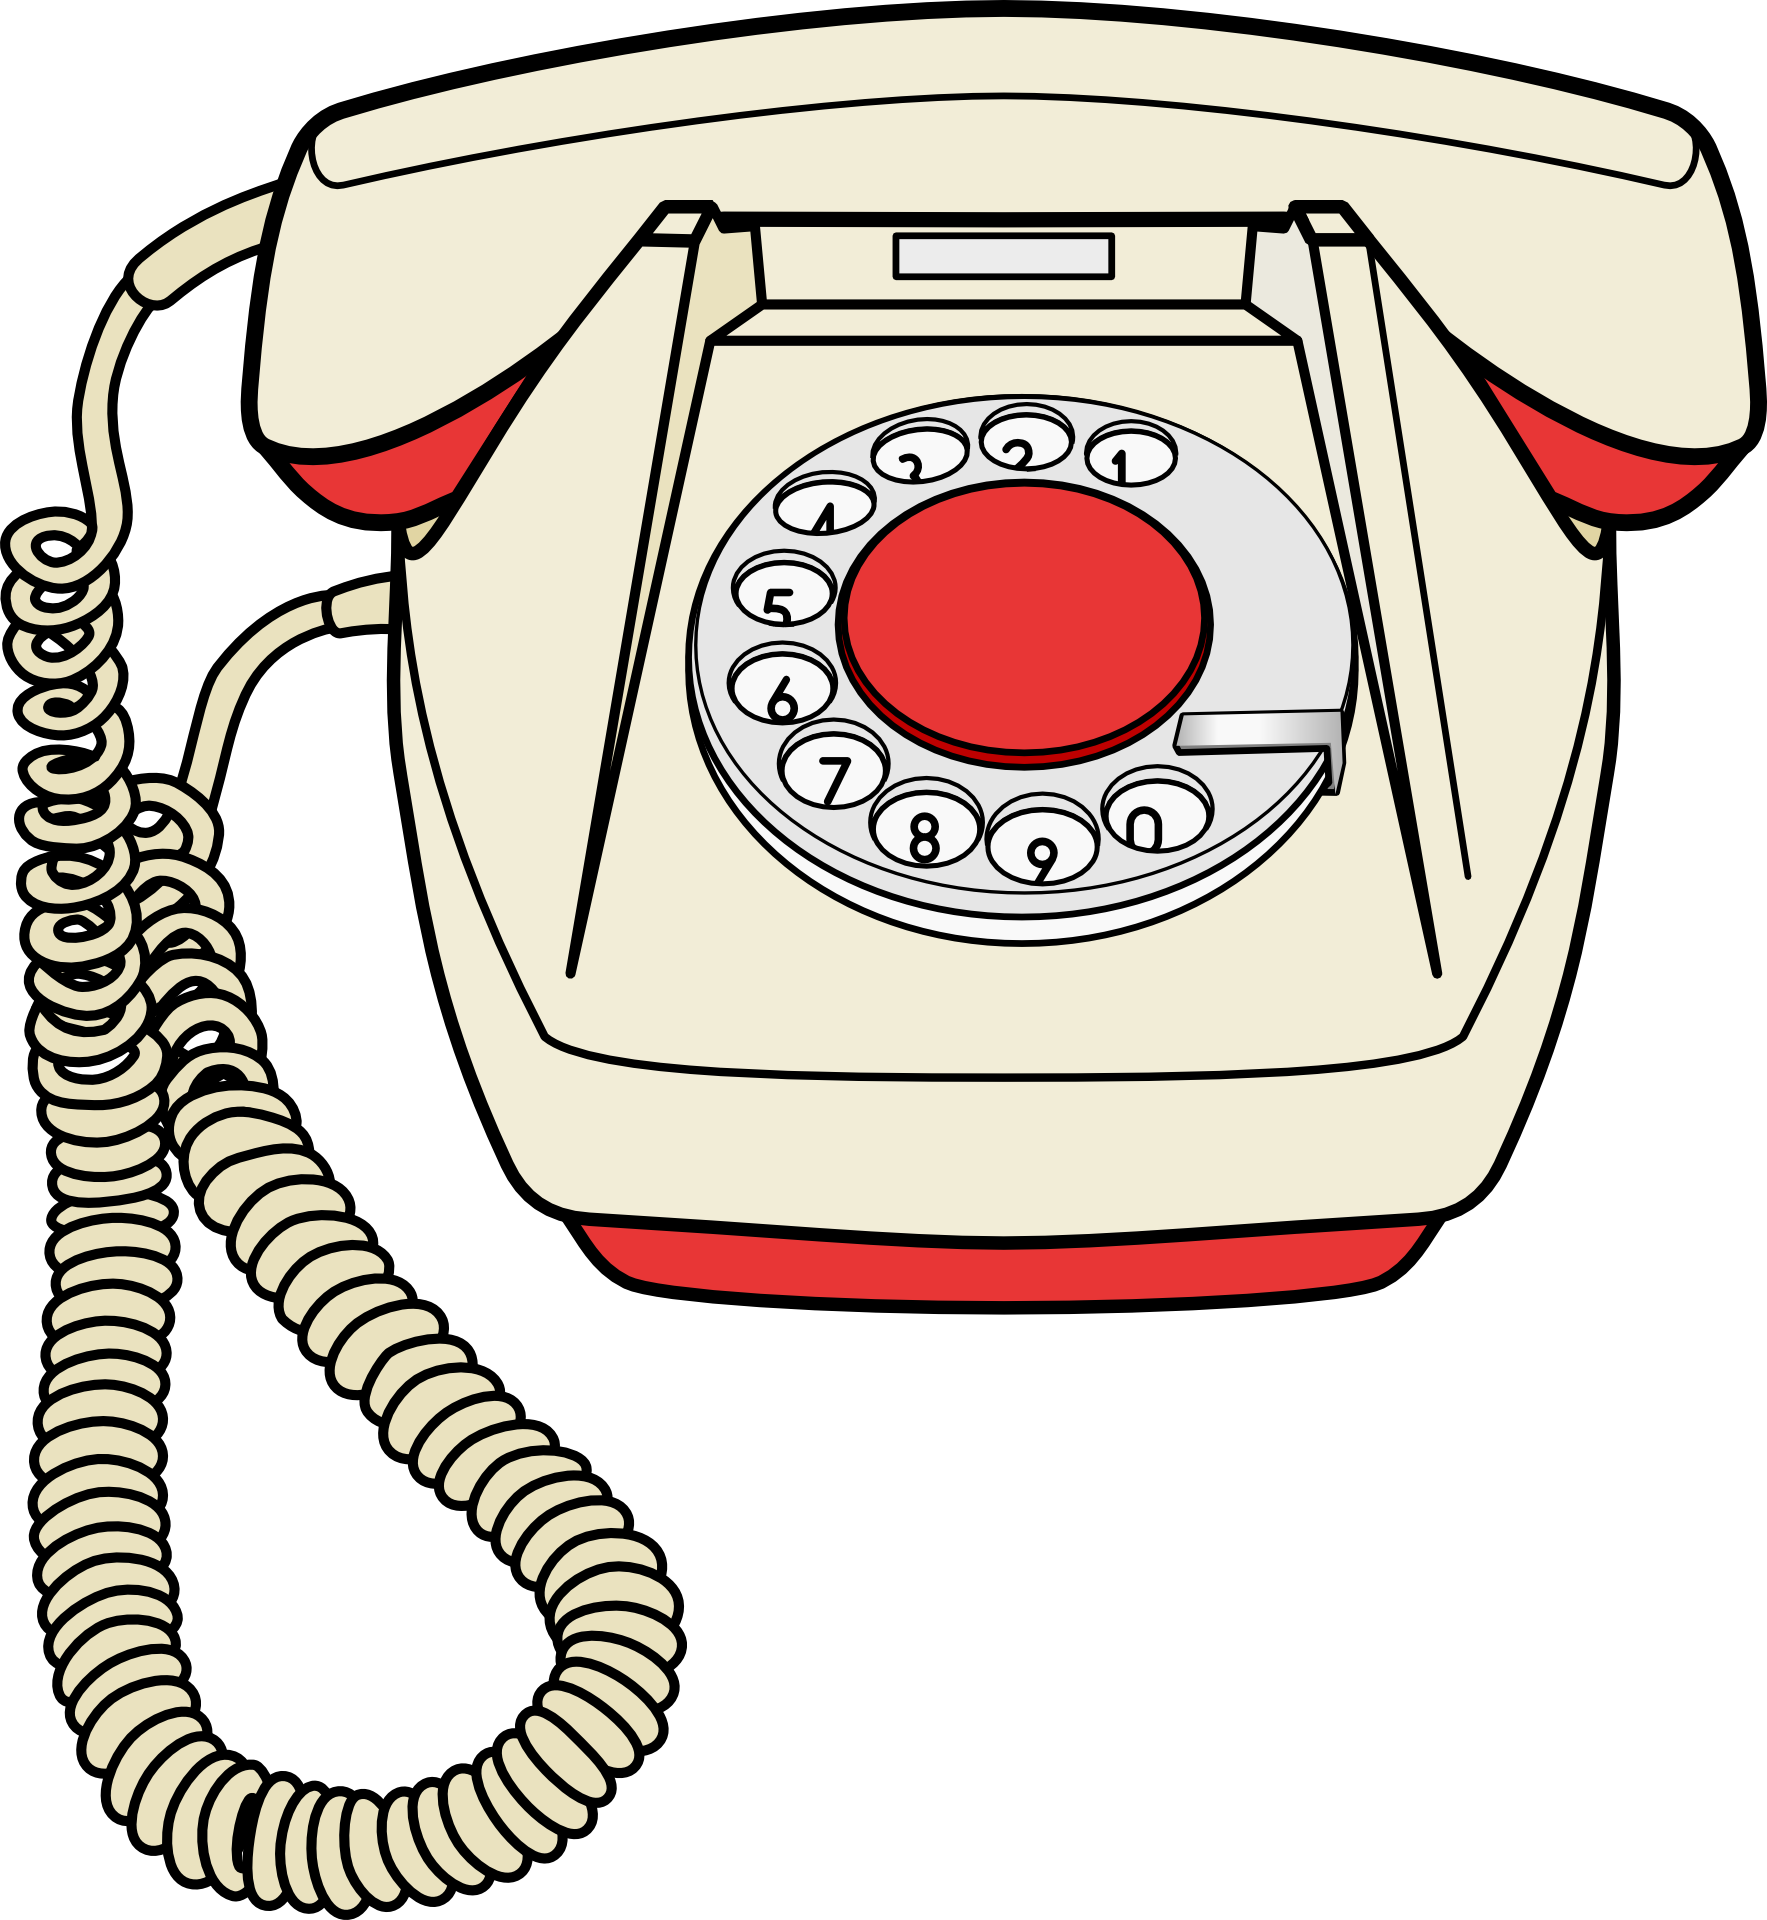 Изображения старого телефона. Сотовый телефон рисунок. Телефонный аппарат на прозрачном фоне. Мобильный телефон мультяшный. Телефон картинка для детей.